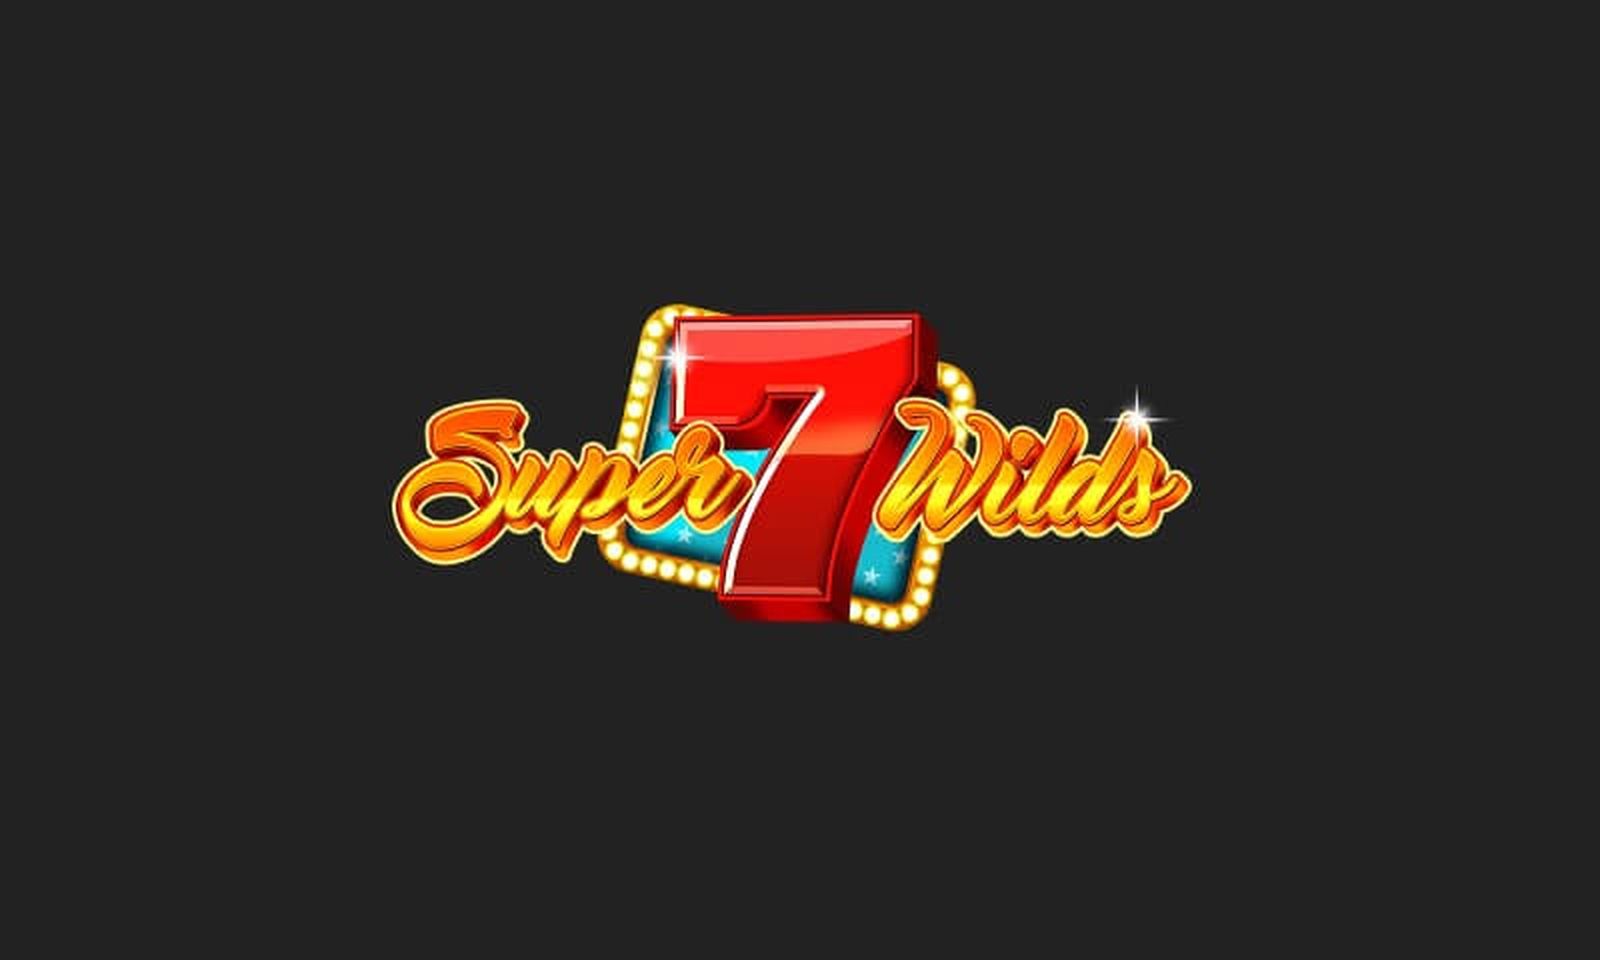 Super Seven Wilds